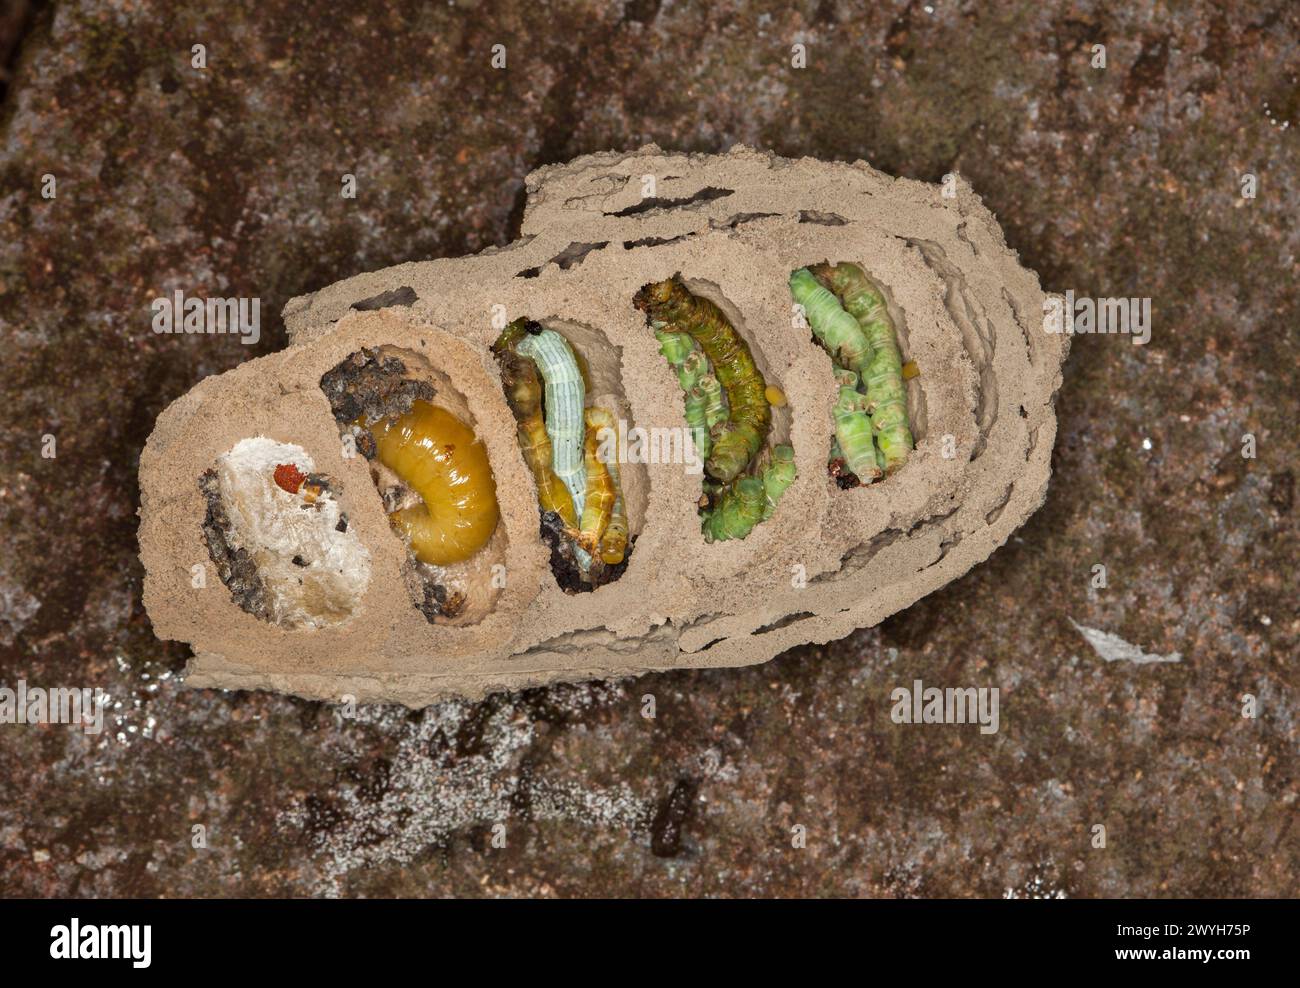 Immagine rara e sorprendente dell'interno del nido di fango/vespa che mostra uova di insetti, caterpillars e larve in vari stadi di metamorfosi Foto Stock